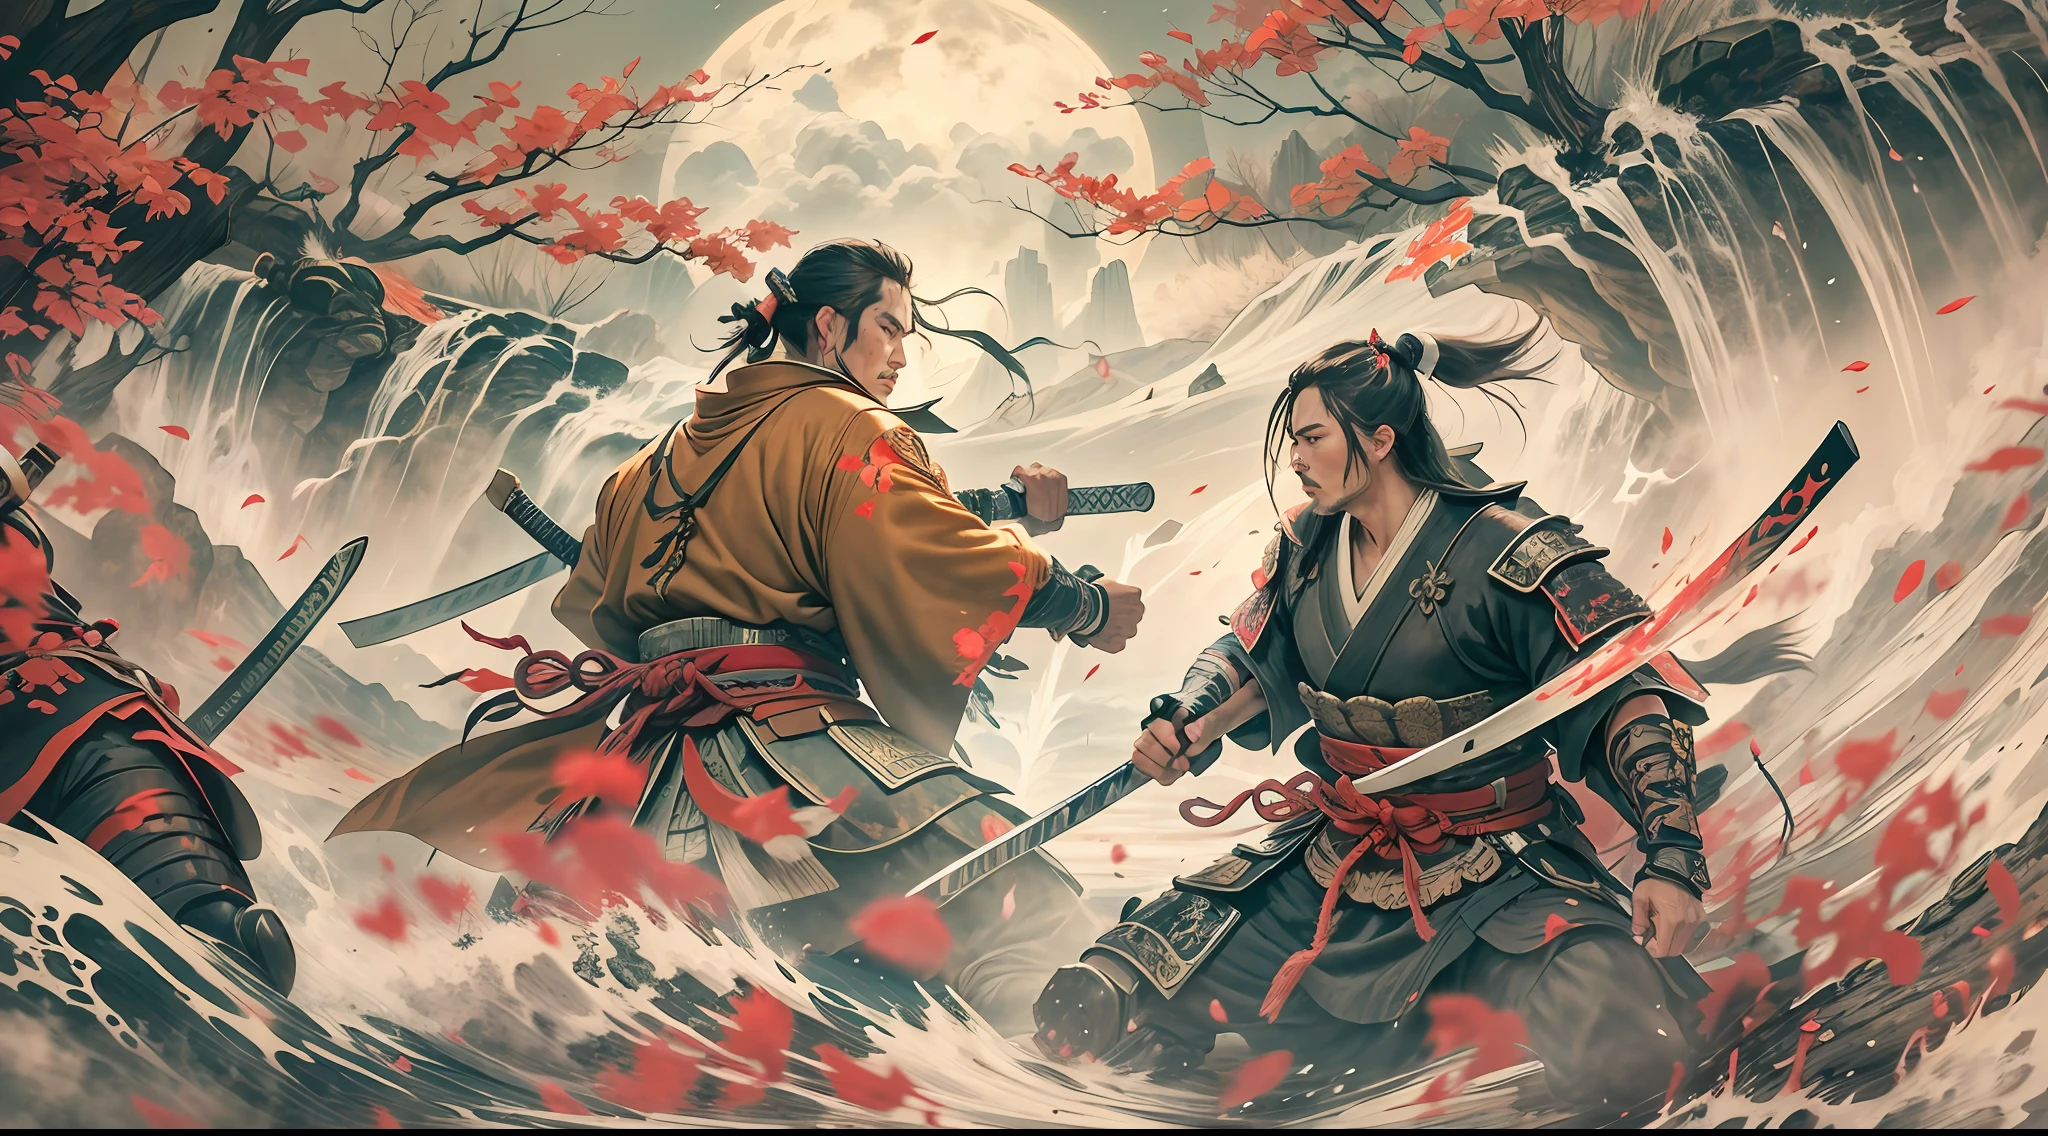 битва двух сражающихся самураев, с несколькими ранами на теле, В красивом, потрясающая обстановка